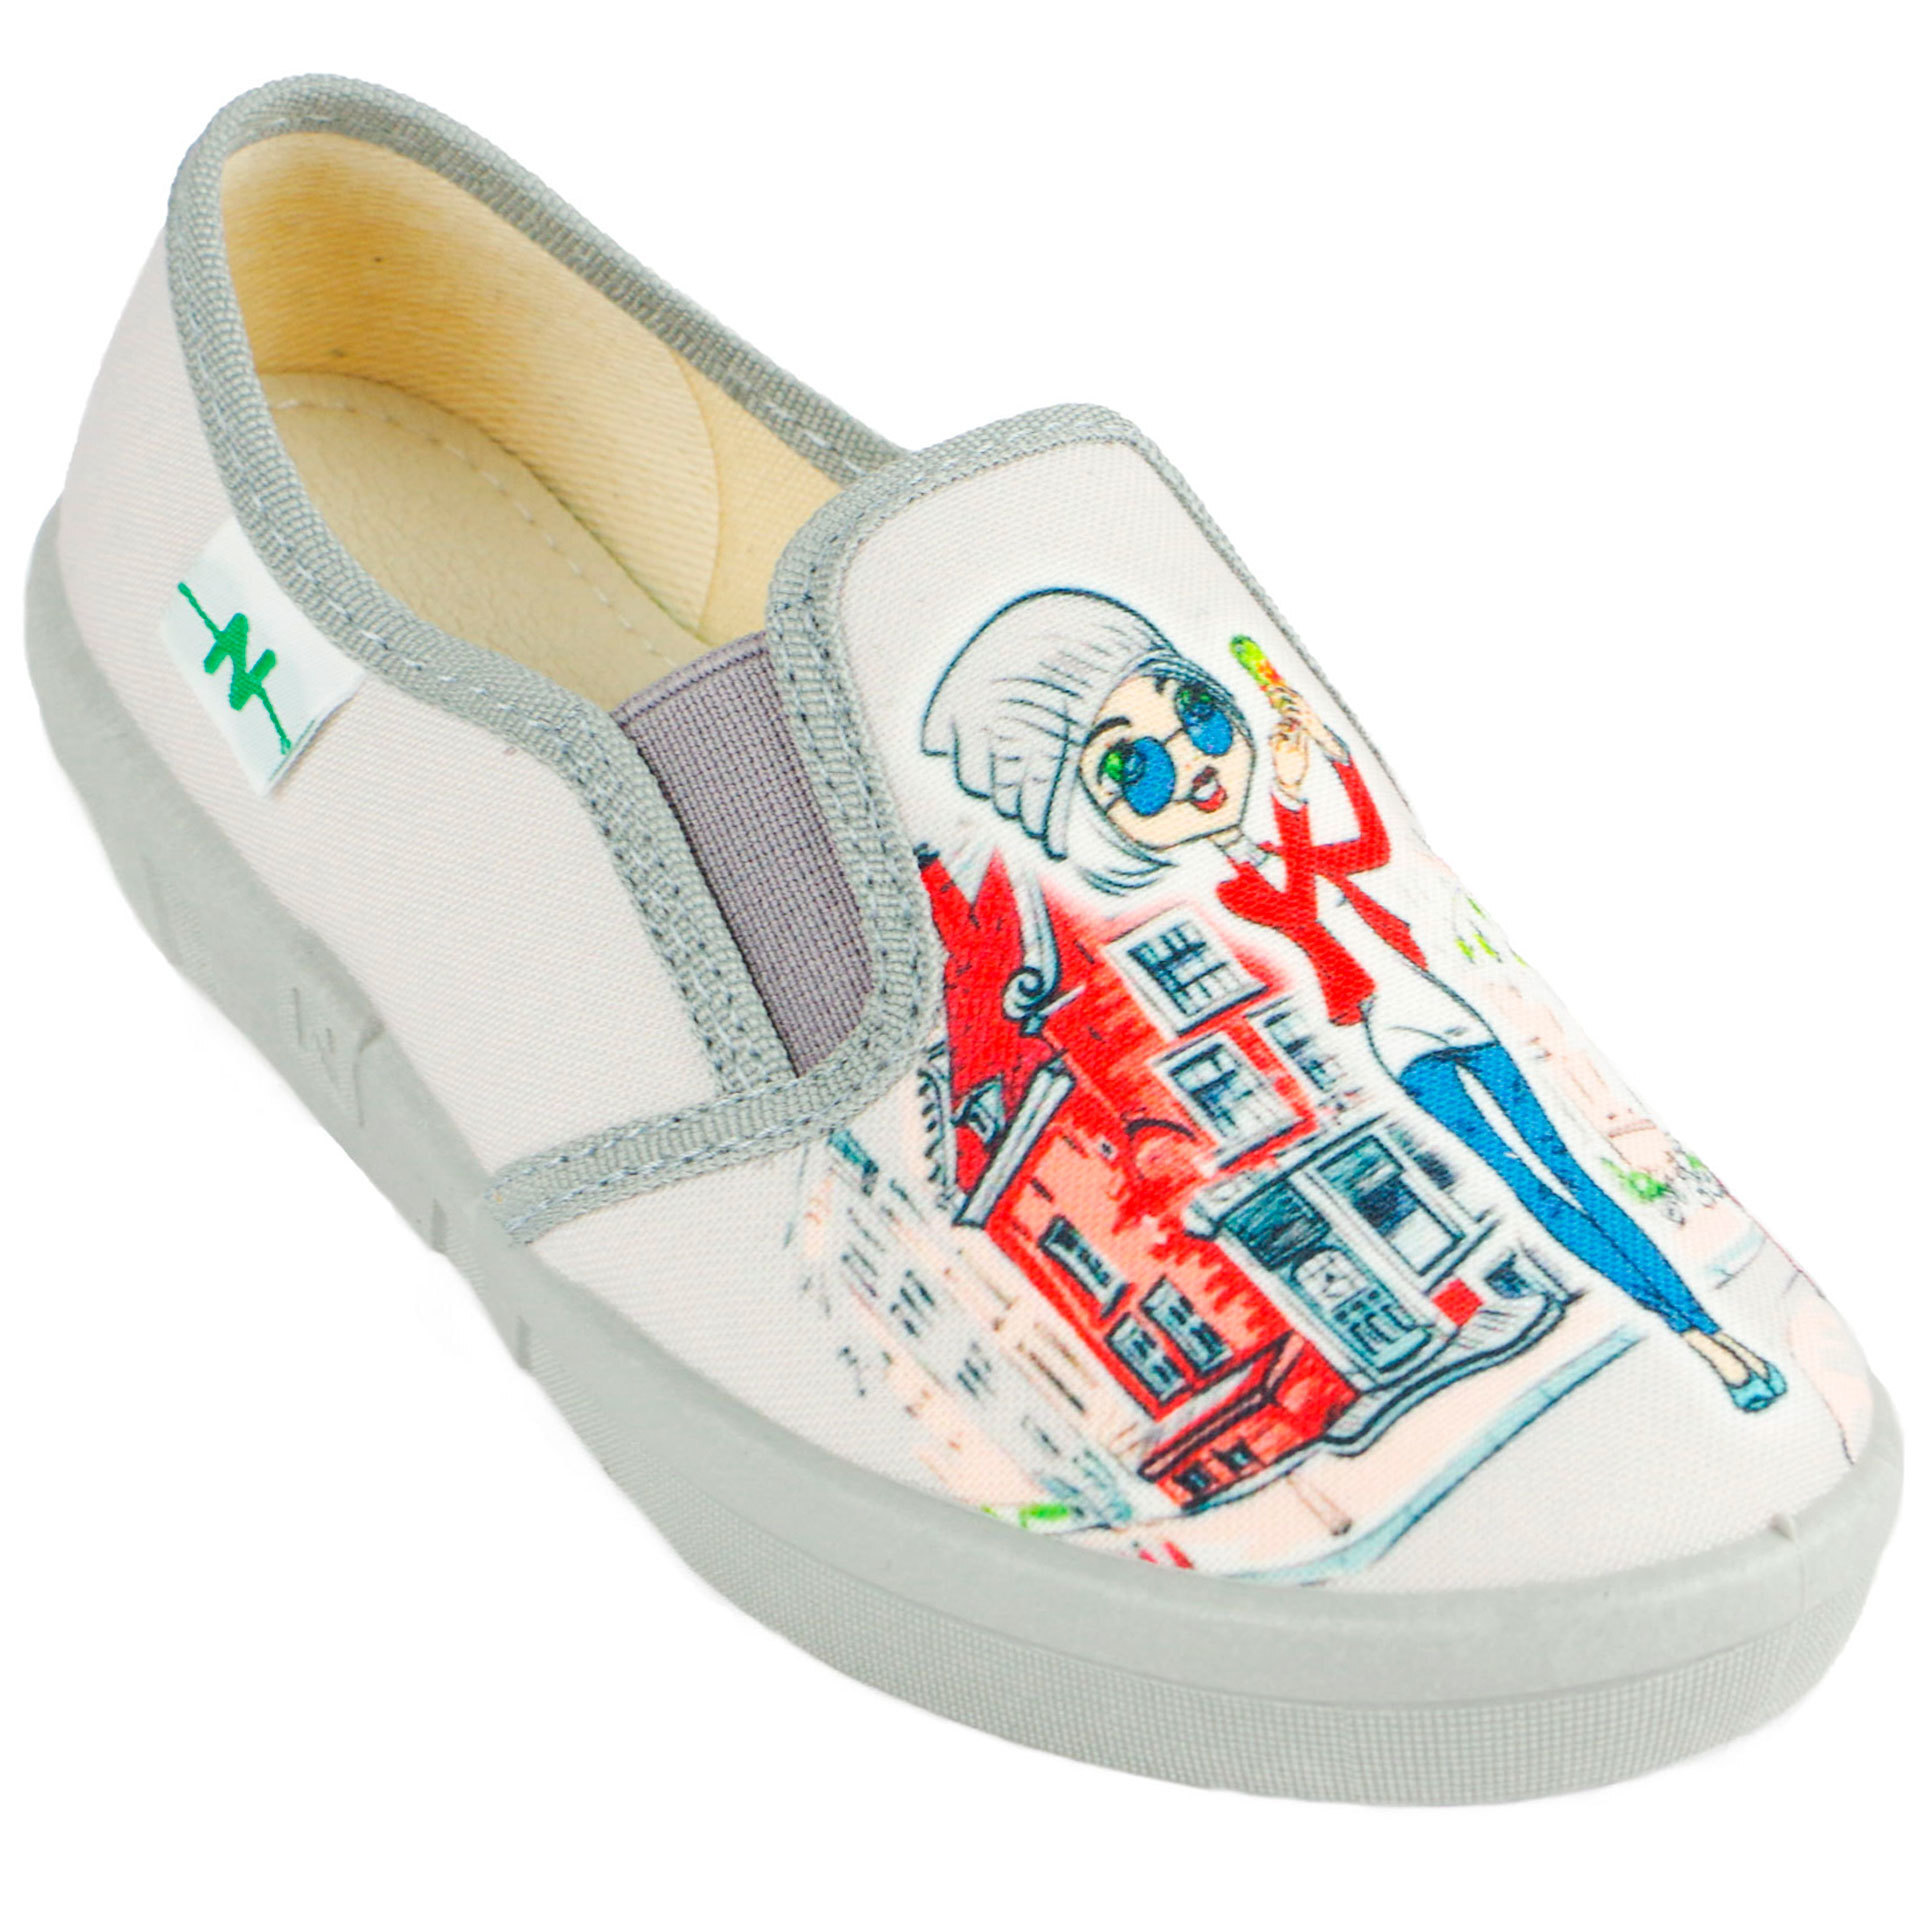 Текстильная обувь для девочек Тапочки Paris (1989) цвет Серый 26-32 размеры – Sole Kids